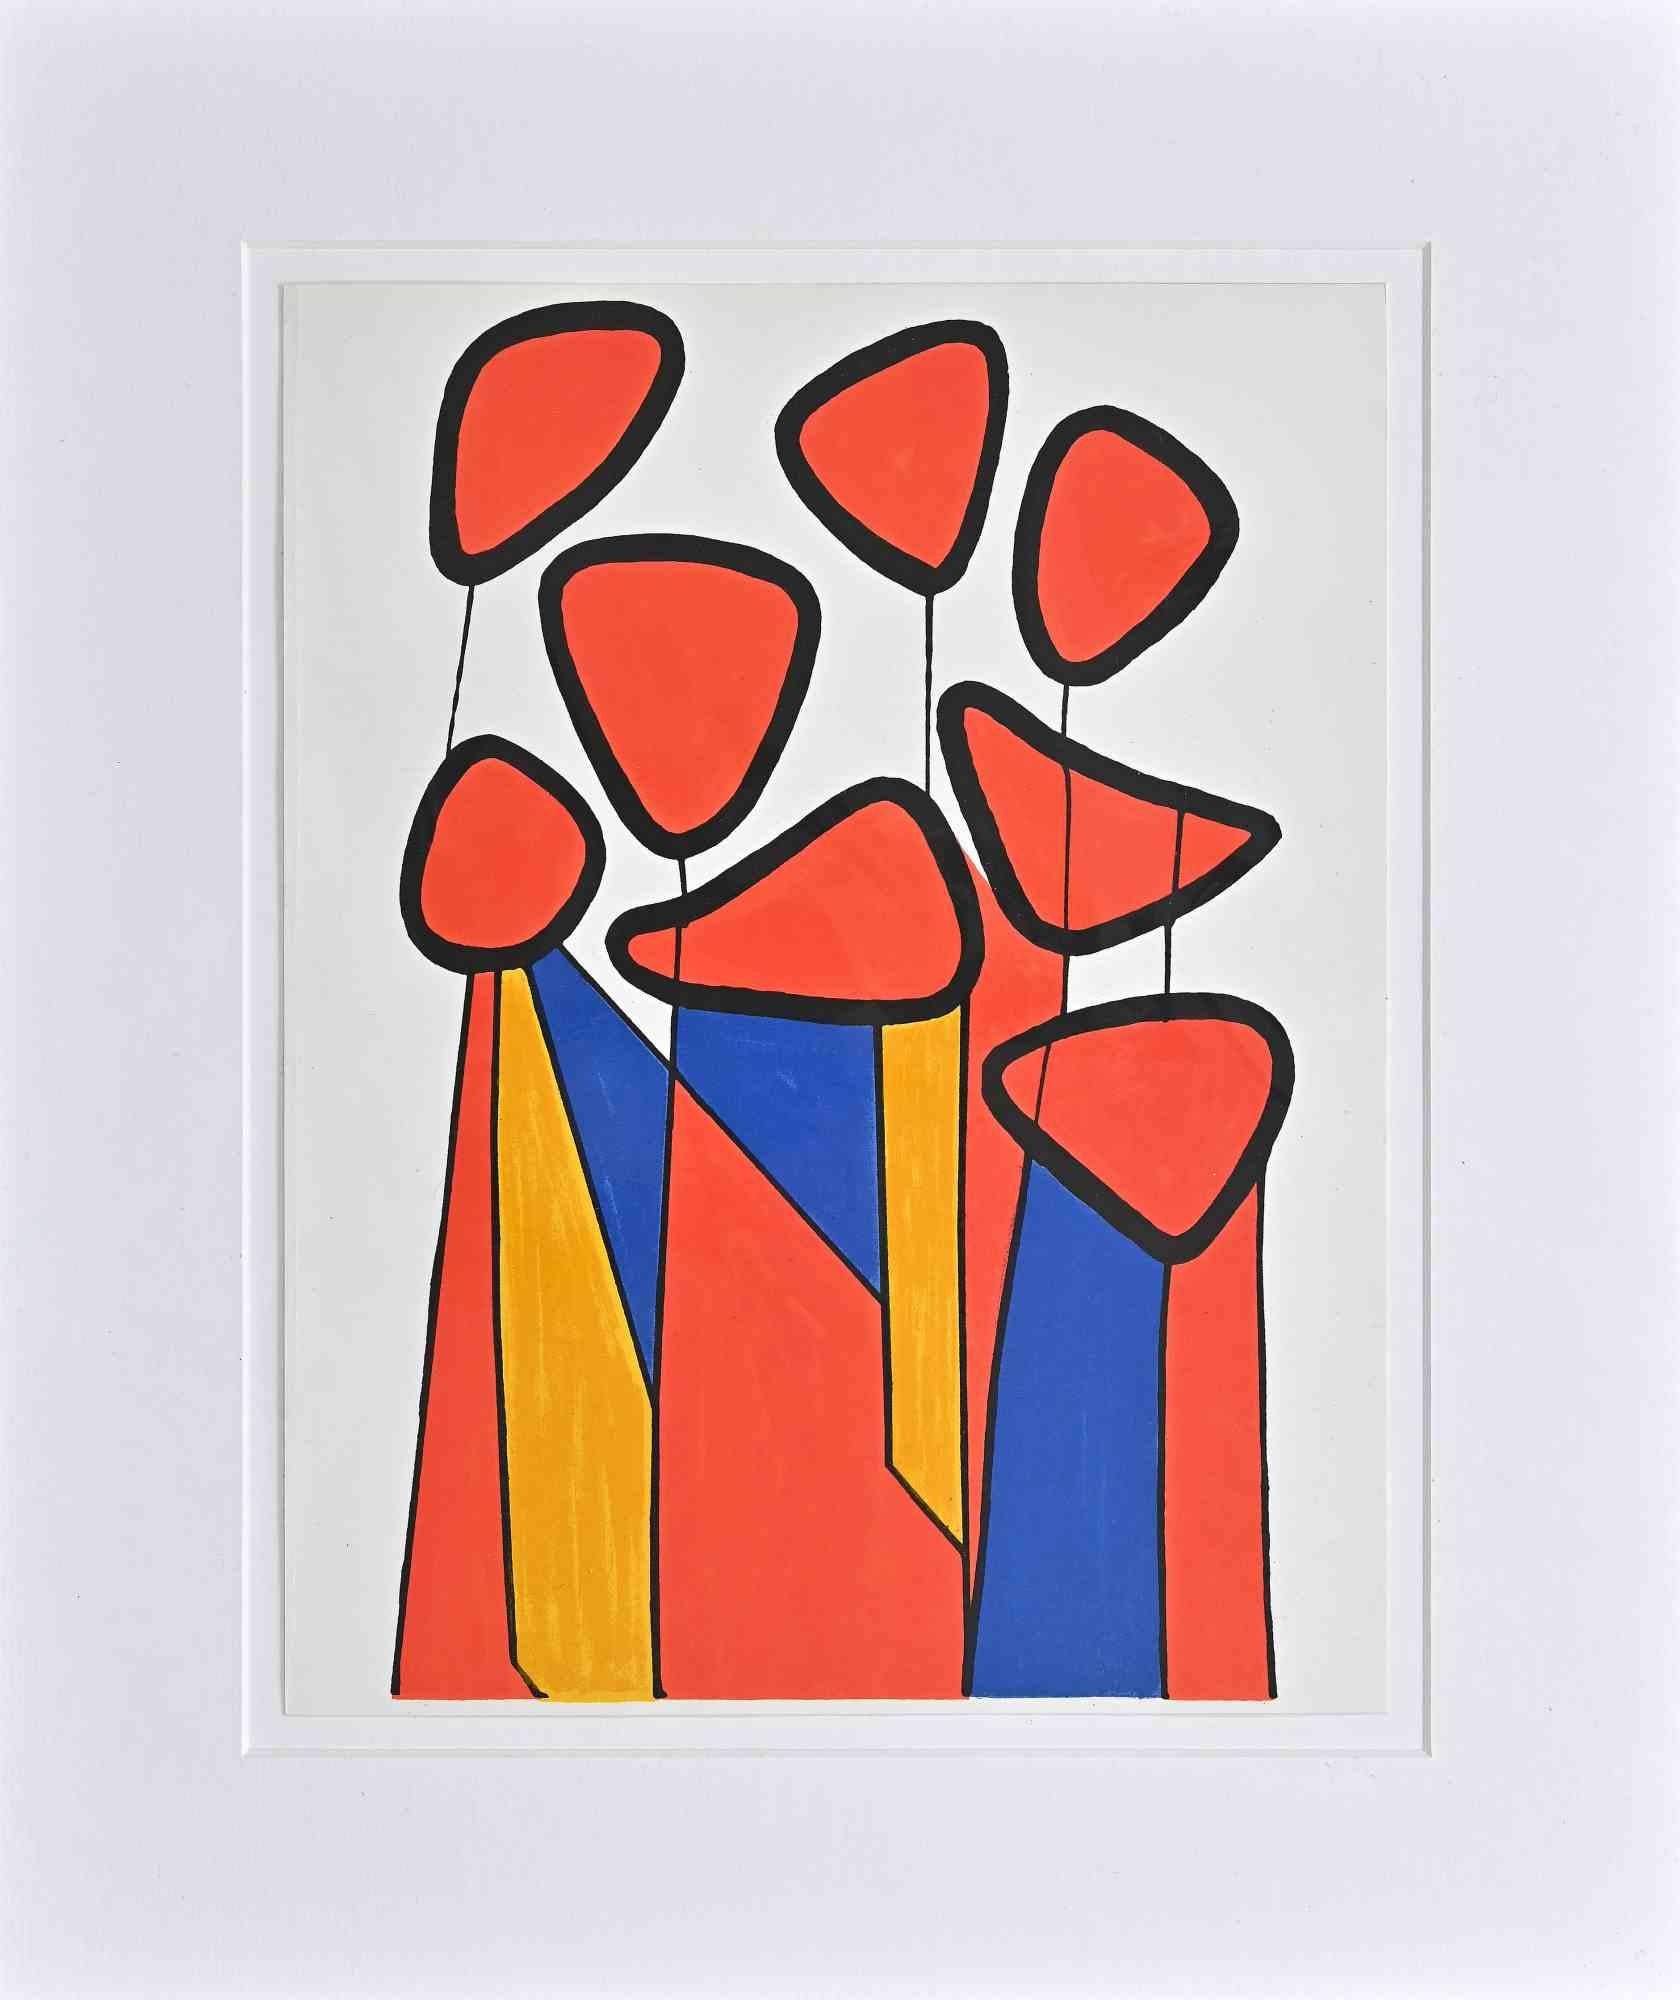 Squash Blossoms ist eine Lithographie, die Alexander Calder 1972 für das Kunstmagazin Xème Siècle anfertigte.

Sehr guter Zustand, einschließlich eines weißen Passepartouts aus Karton (44x37 cm).

Keine Unterschrift.

Alexander Calder (22. Juli 1898